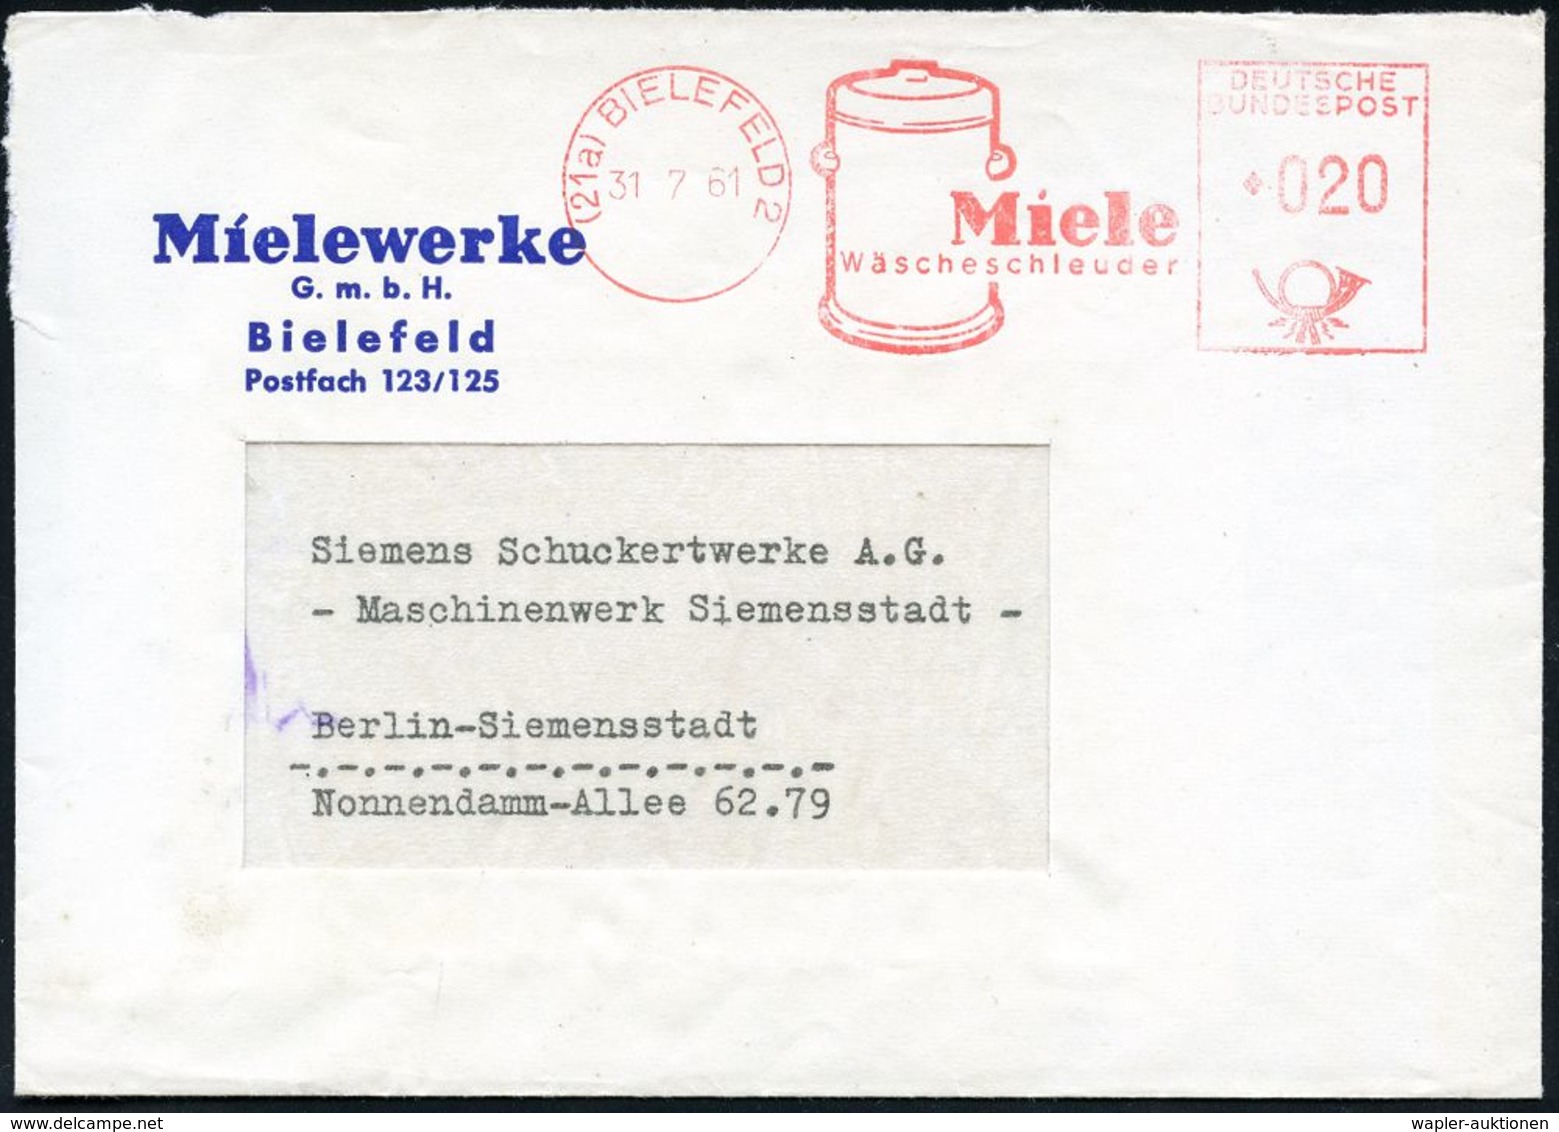 ELEKTRISCHE APPARATE & MASCHINEN : (21a) BIELEFELD 2/ Miele/ Wäscheschleuder 1961 (31.7.) Dekorat. AFS = Wäscheschleuder - Electricité